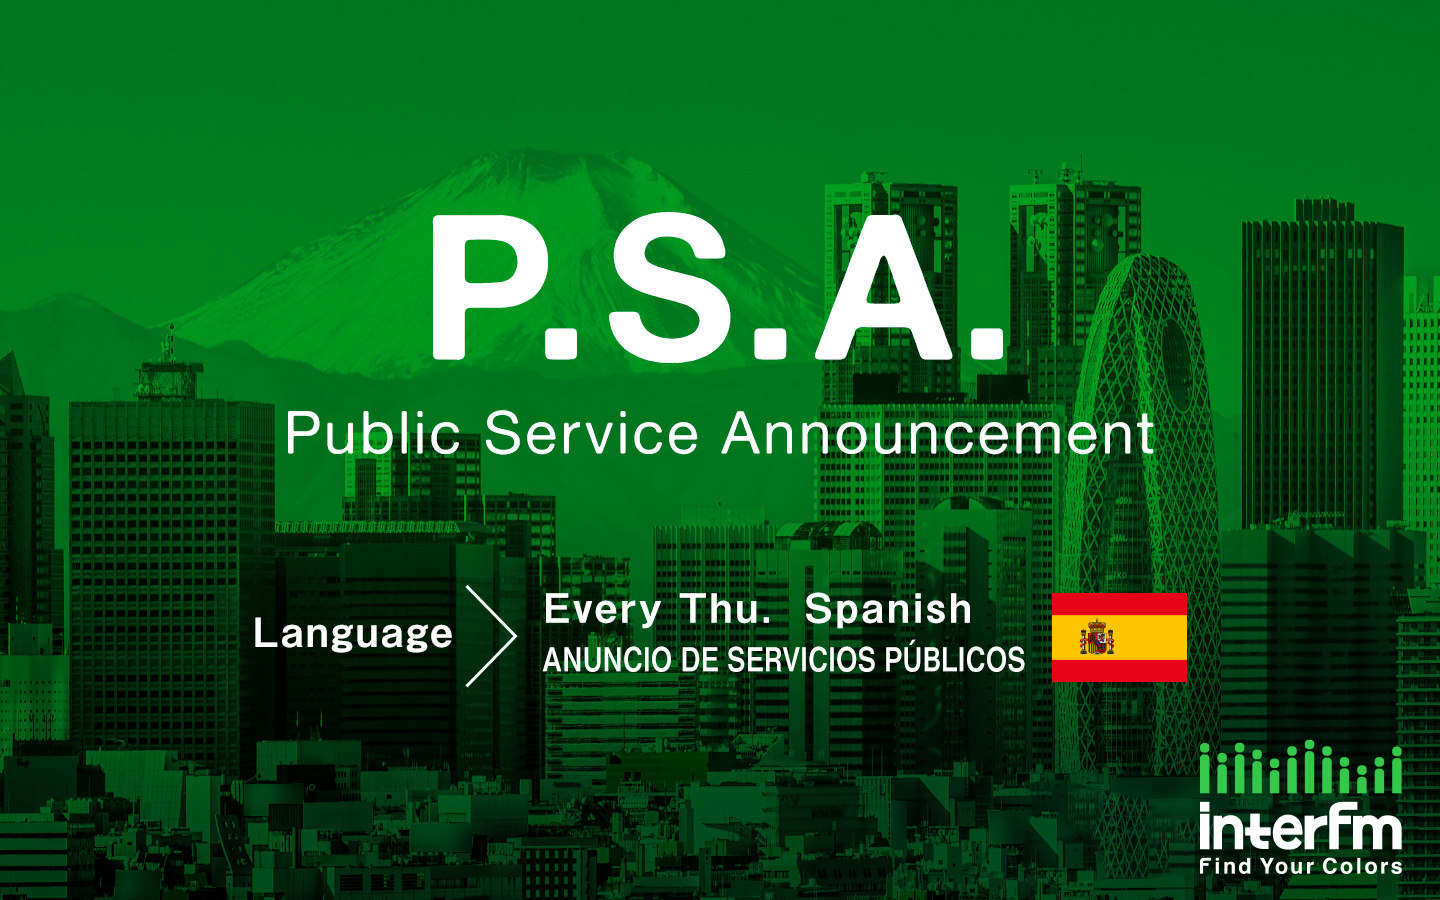 Anuncio de servicios publicos - Public Service Announcement (Español - Spanish)